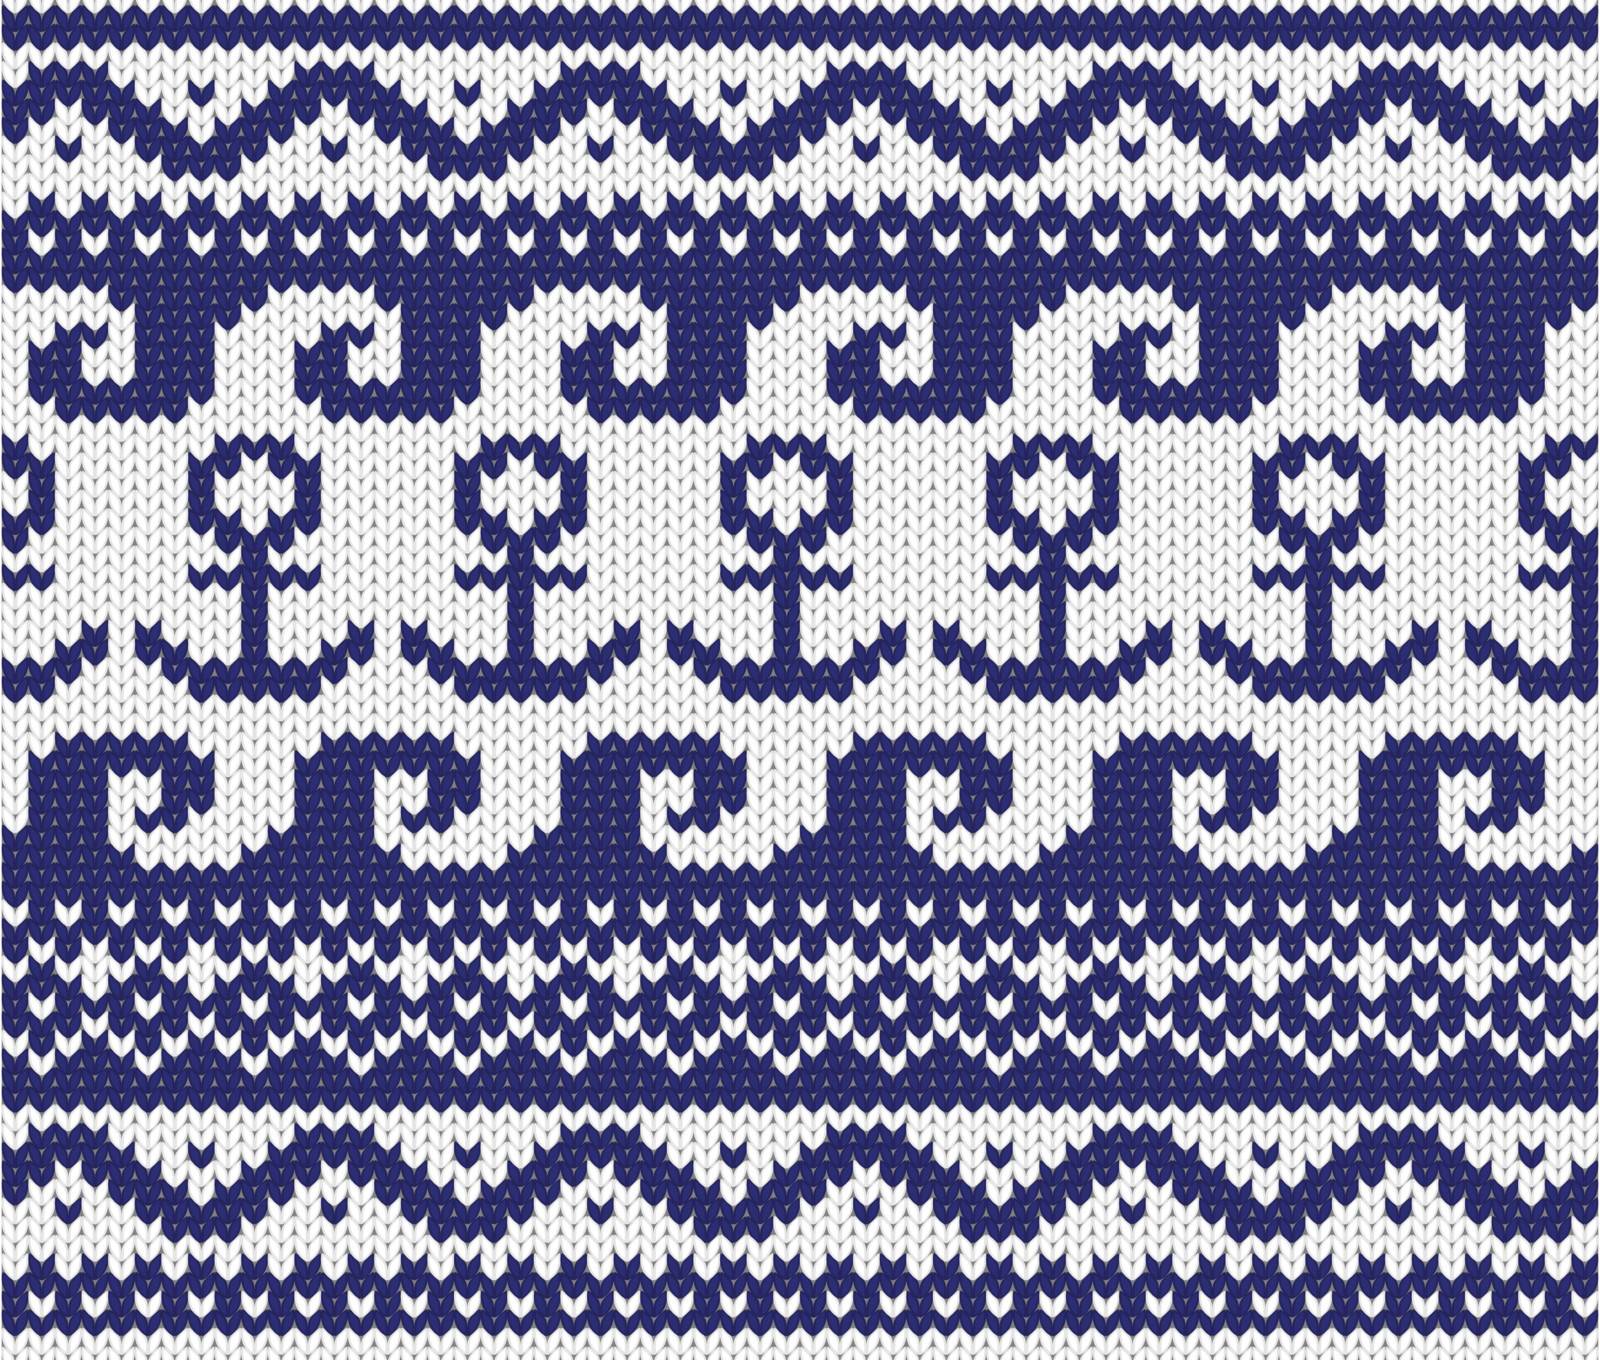 knitted marine pattern by evdakovka